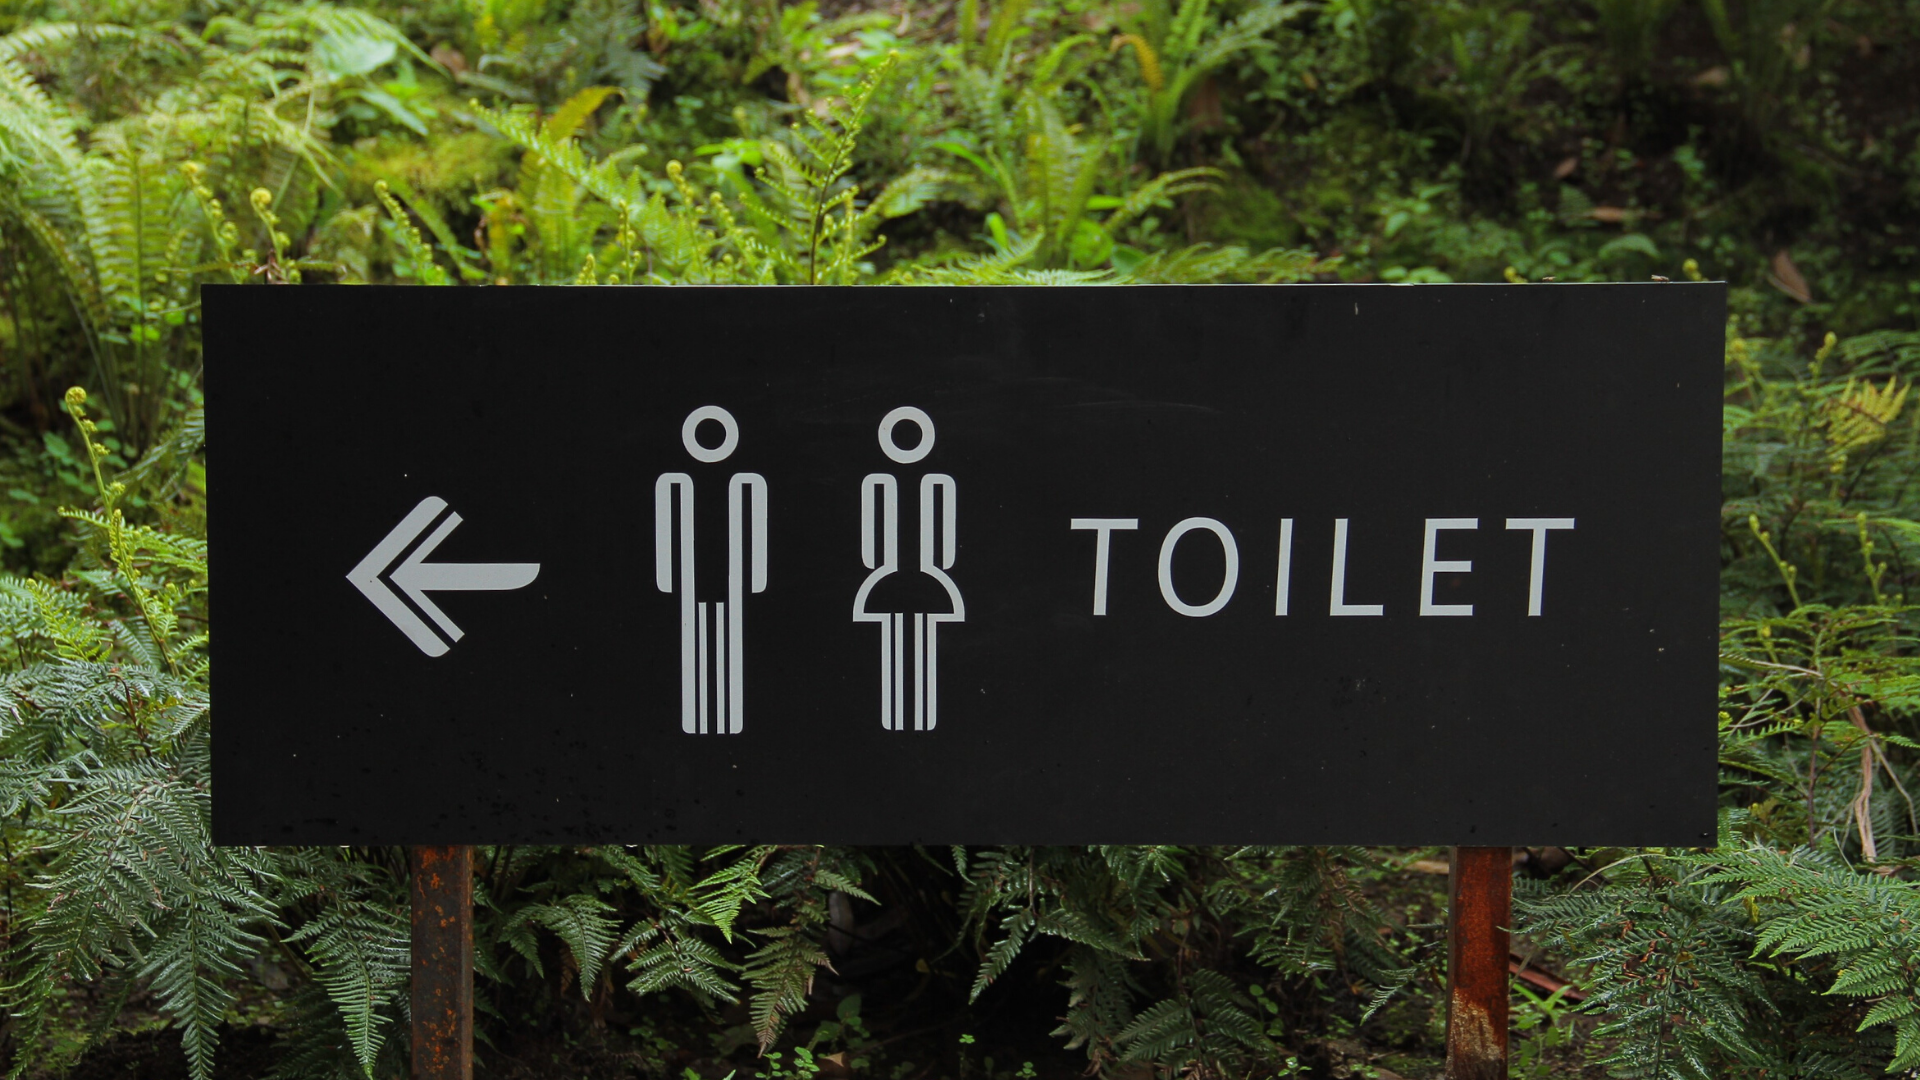 Tuvalet için tabela görseli.